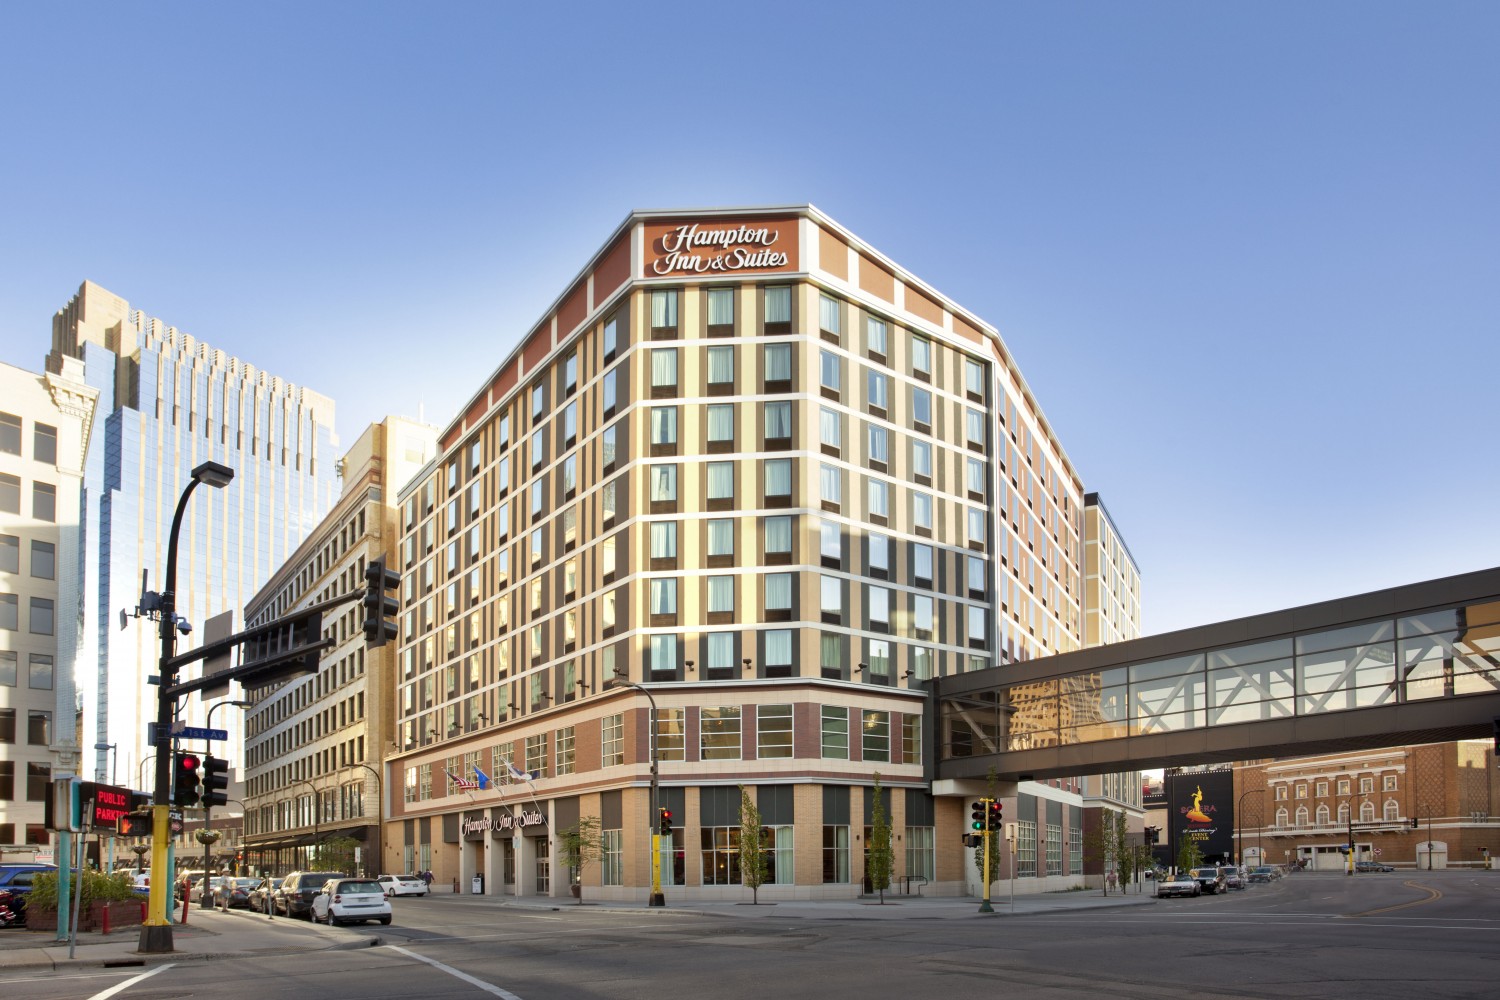 Hampton Inn & Suites - Downtown Minneapolis, MN